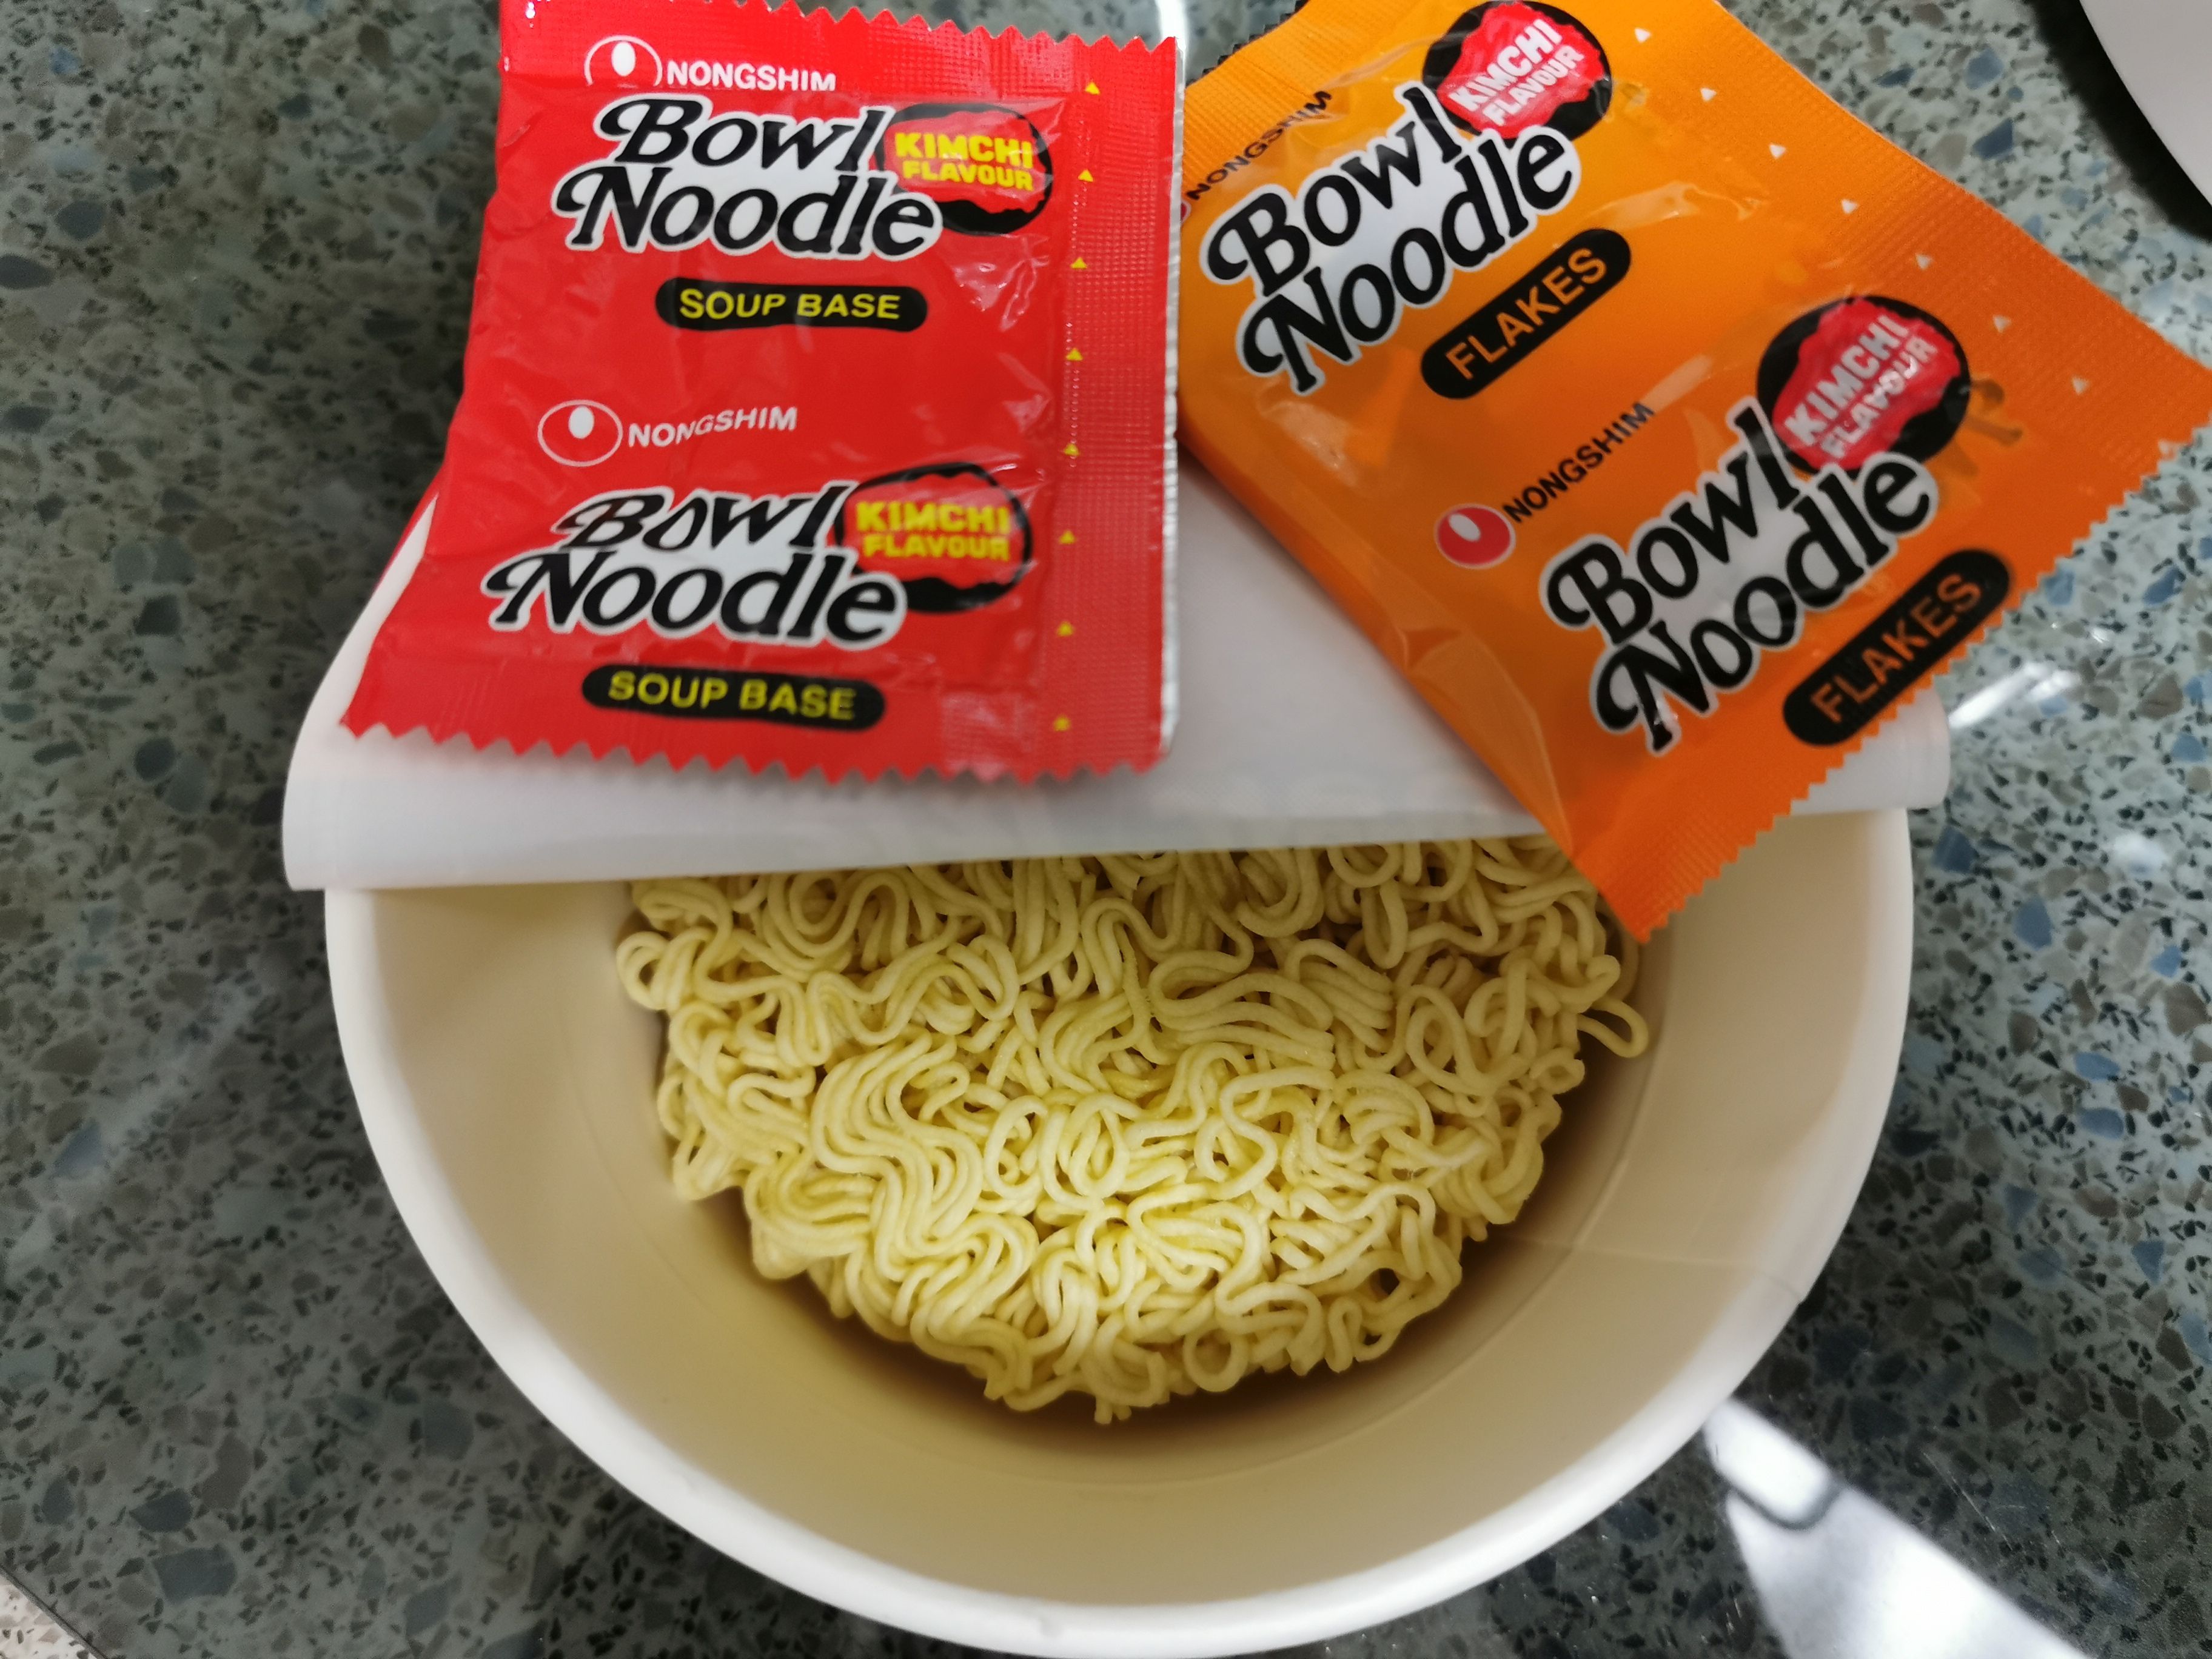 #2151: Nongshim "Bowl Noodle Kimchi Flavour"